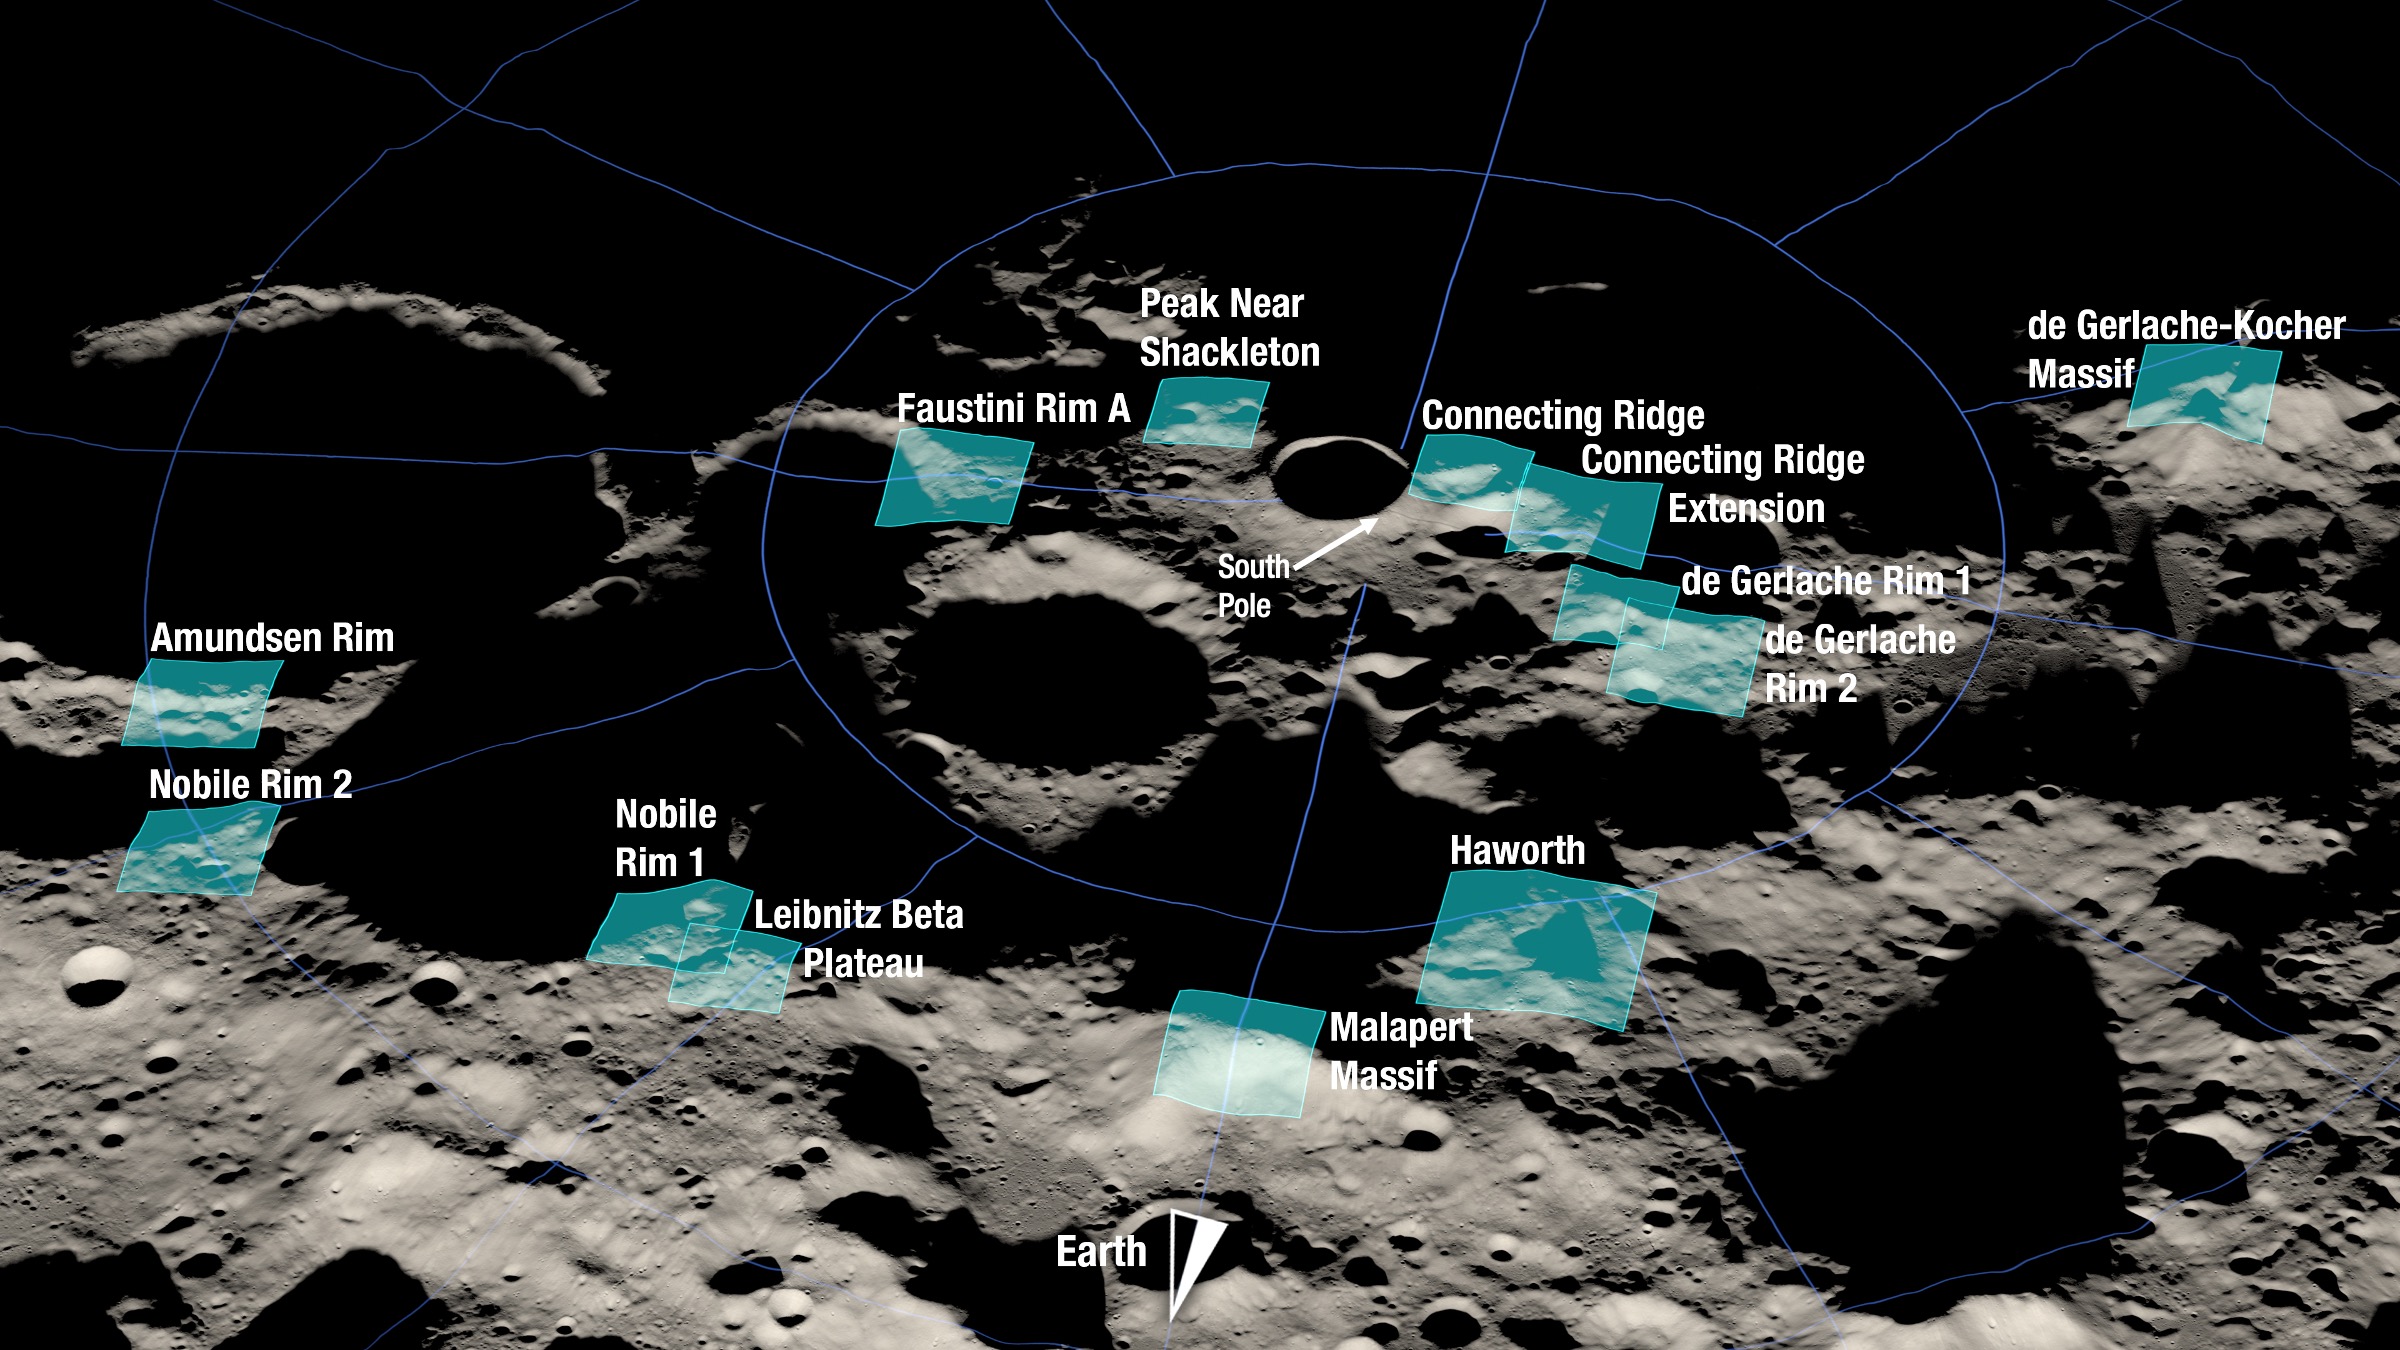 Mapa de la superficie lunar con 13 sitios de aterrizaje propuestos